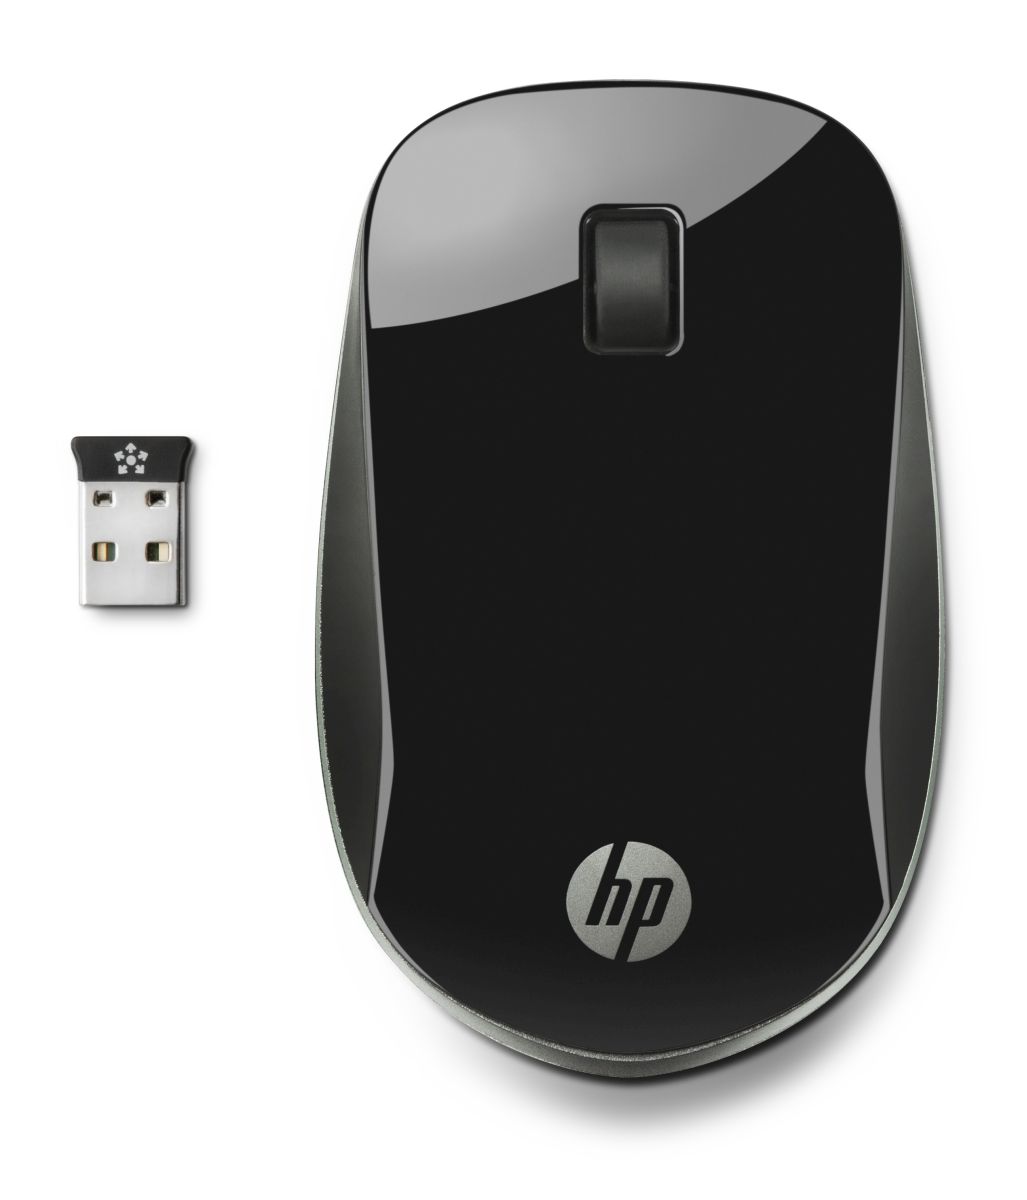 Bezdrátová myš HP Z4000 - černá (H5N61AA)